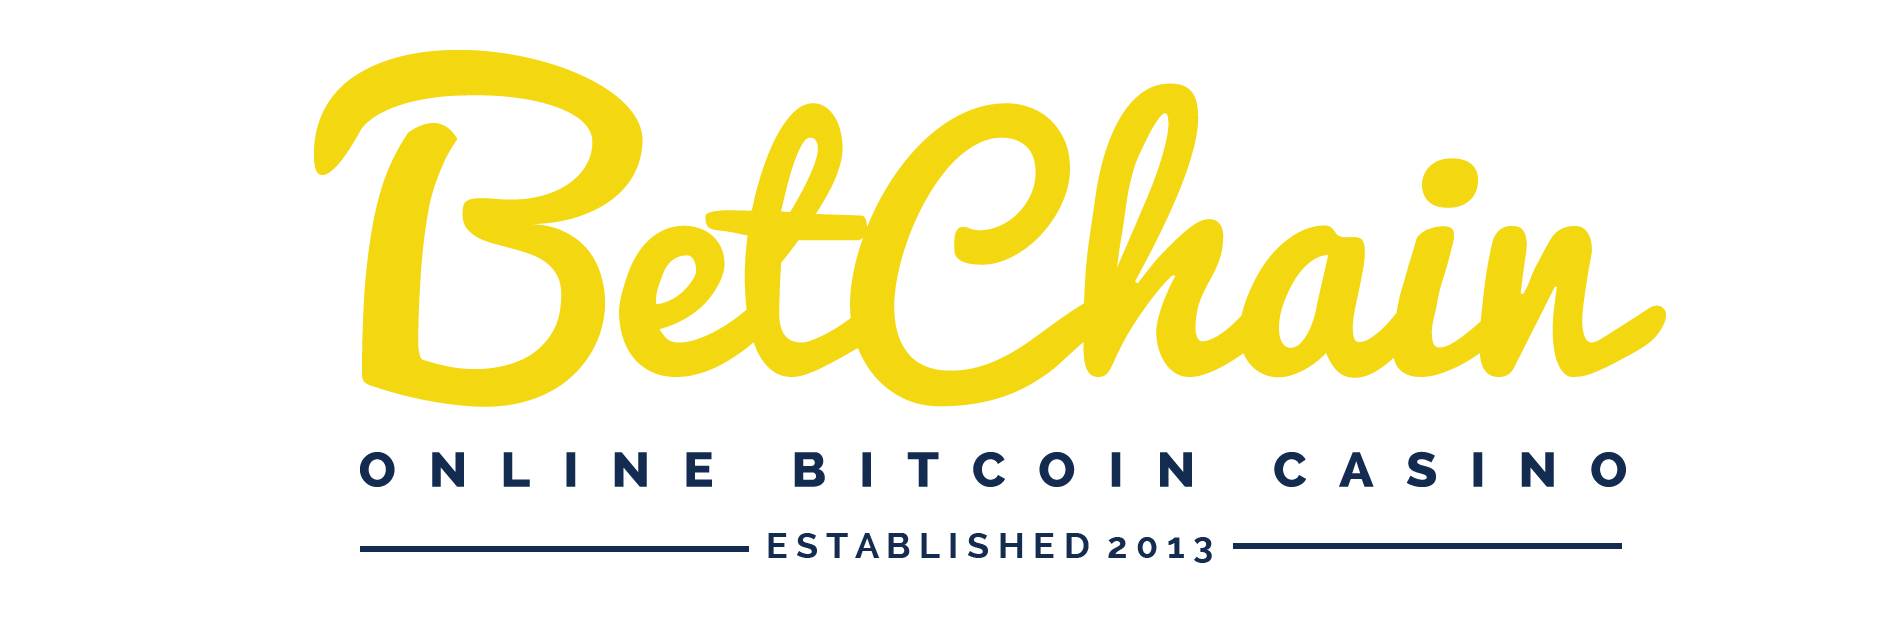 BetChain ist ein beliebter Glücksspielort für Bitcoins und Altcoins